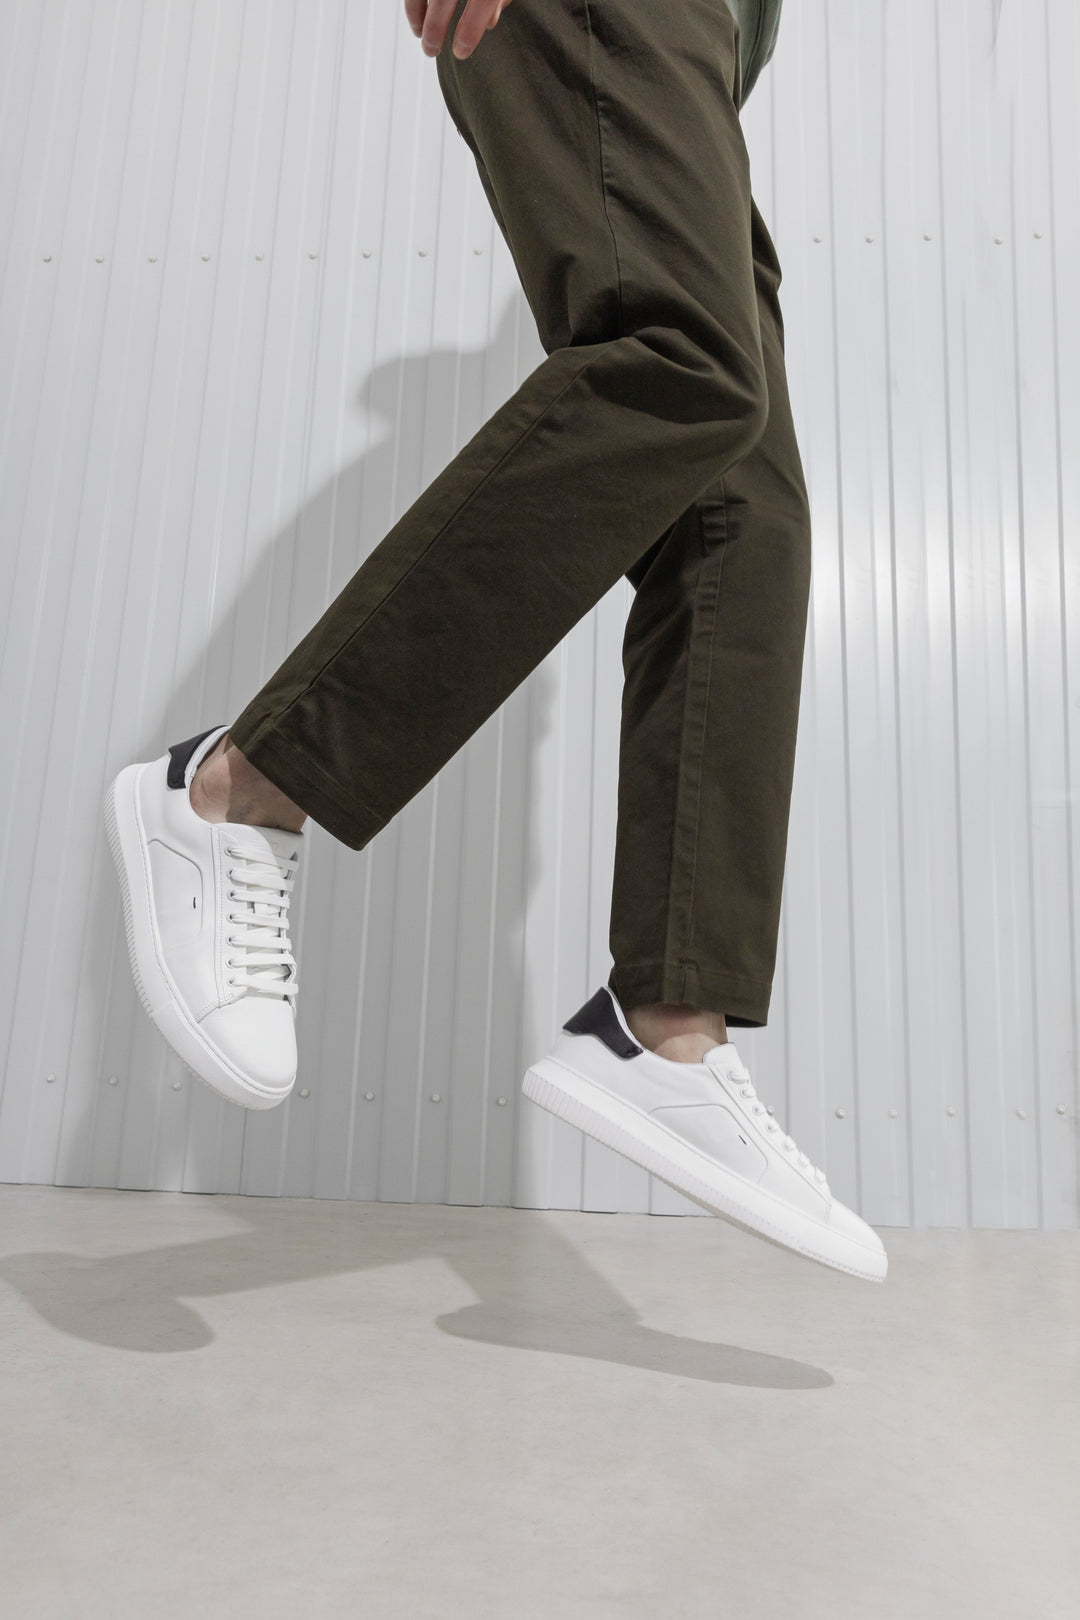 Białe, niskie sneakersy męskie ze sznurowaniem ze skóry naturalnej marki Estro.